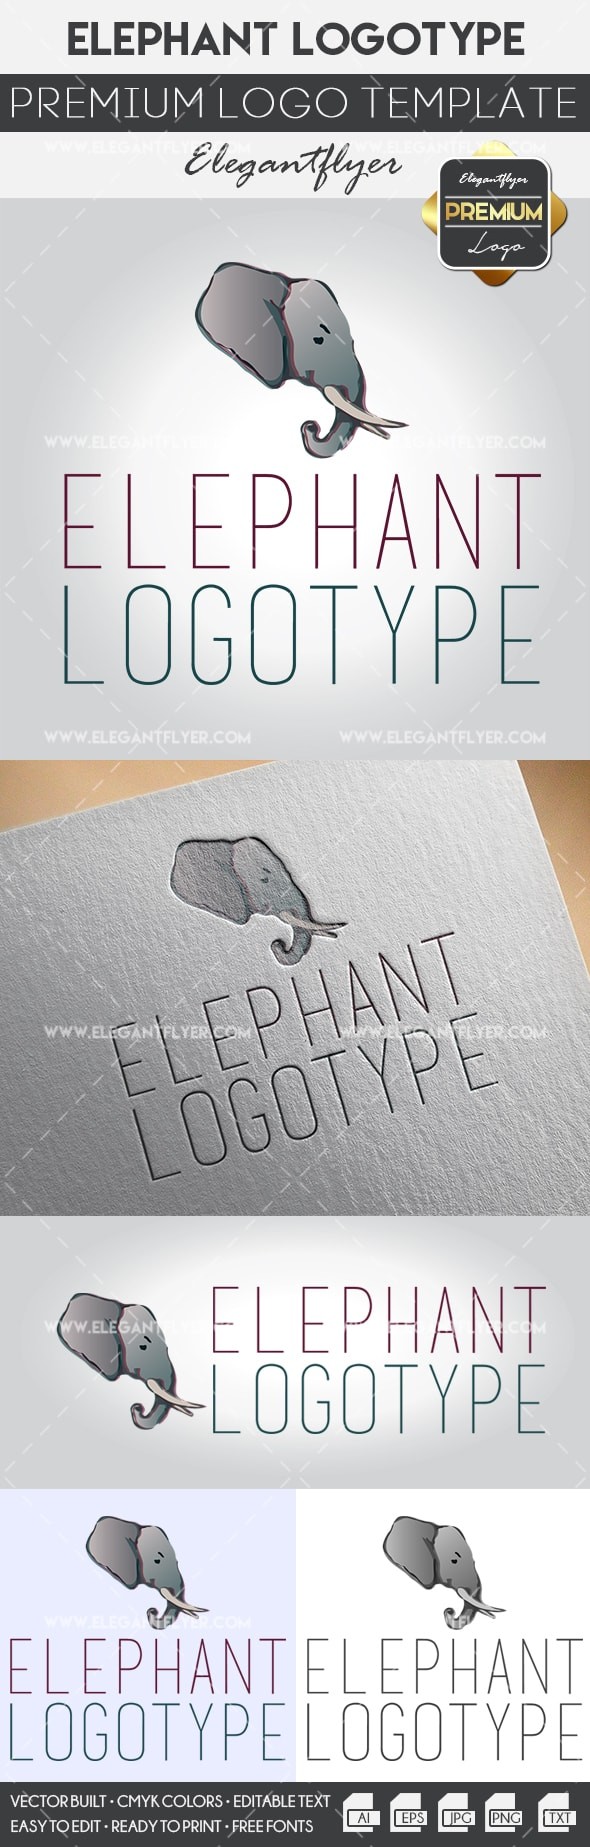 Elephant by ElegantFlyer